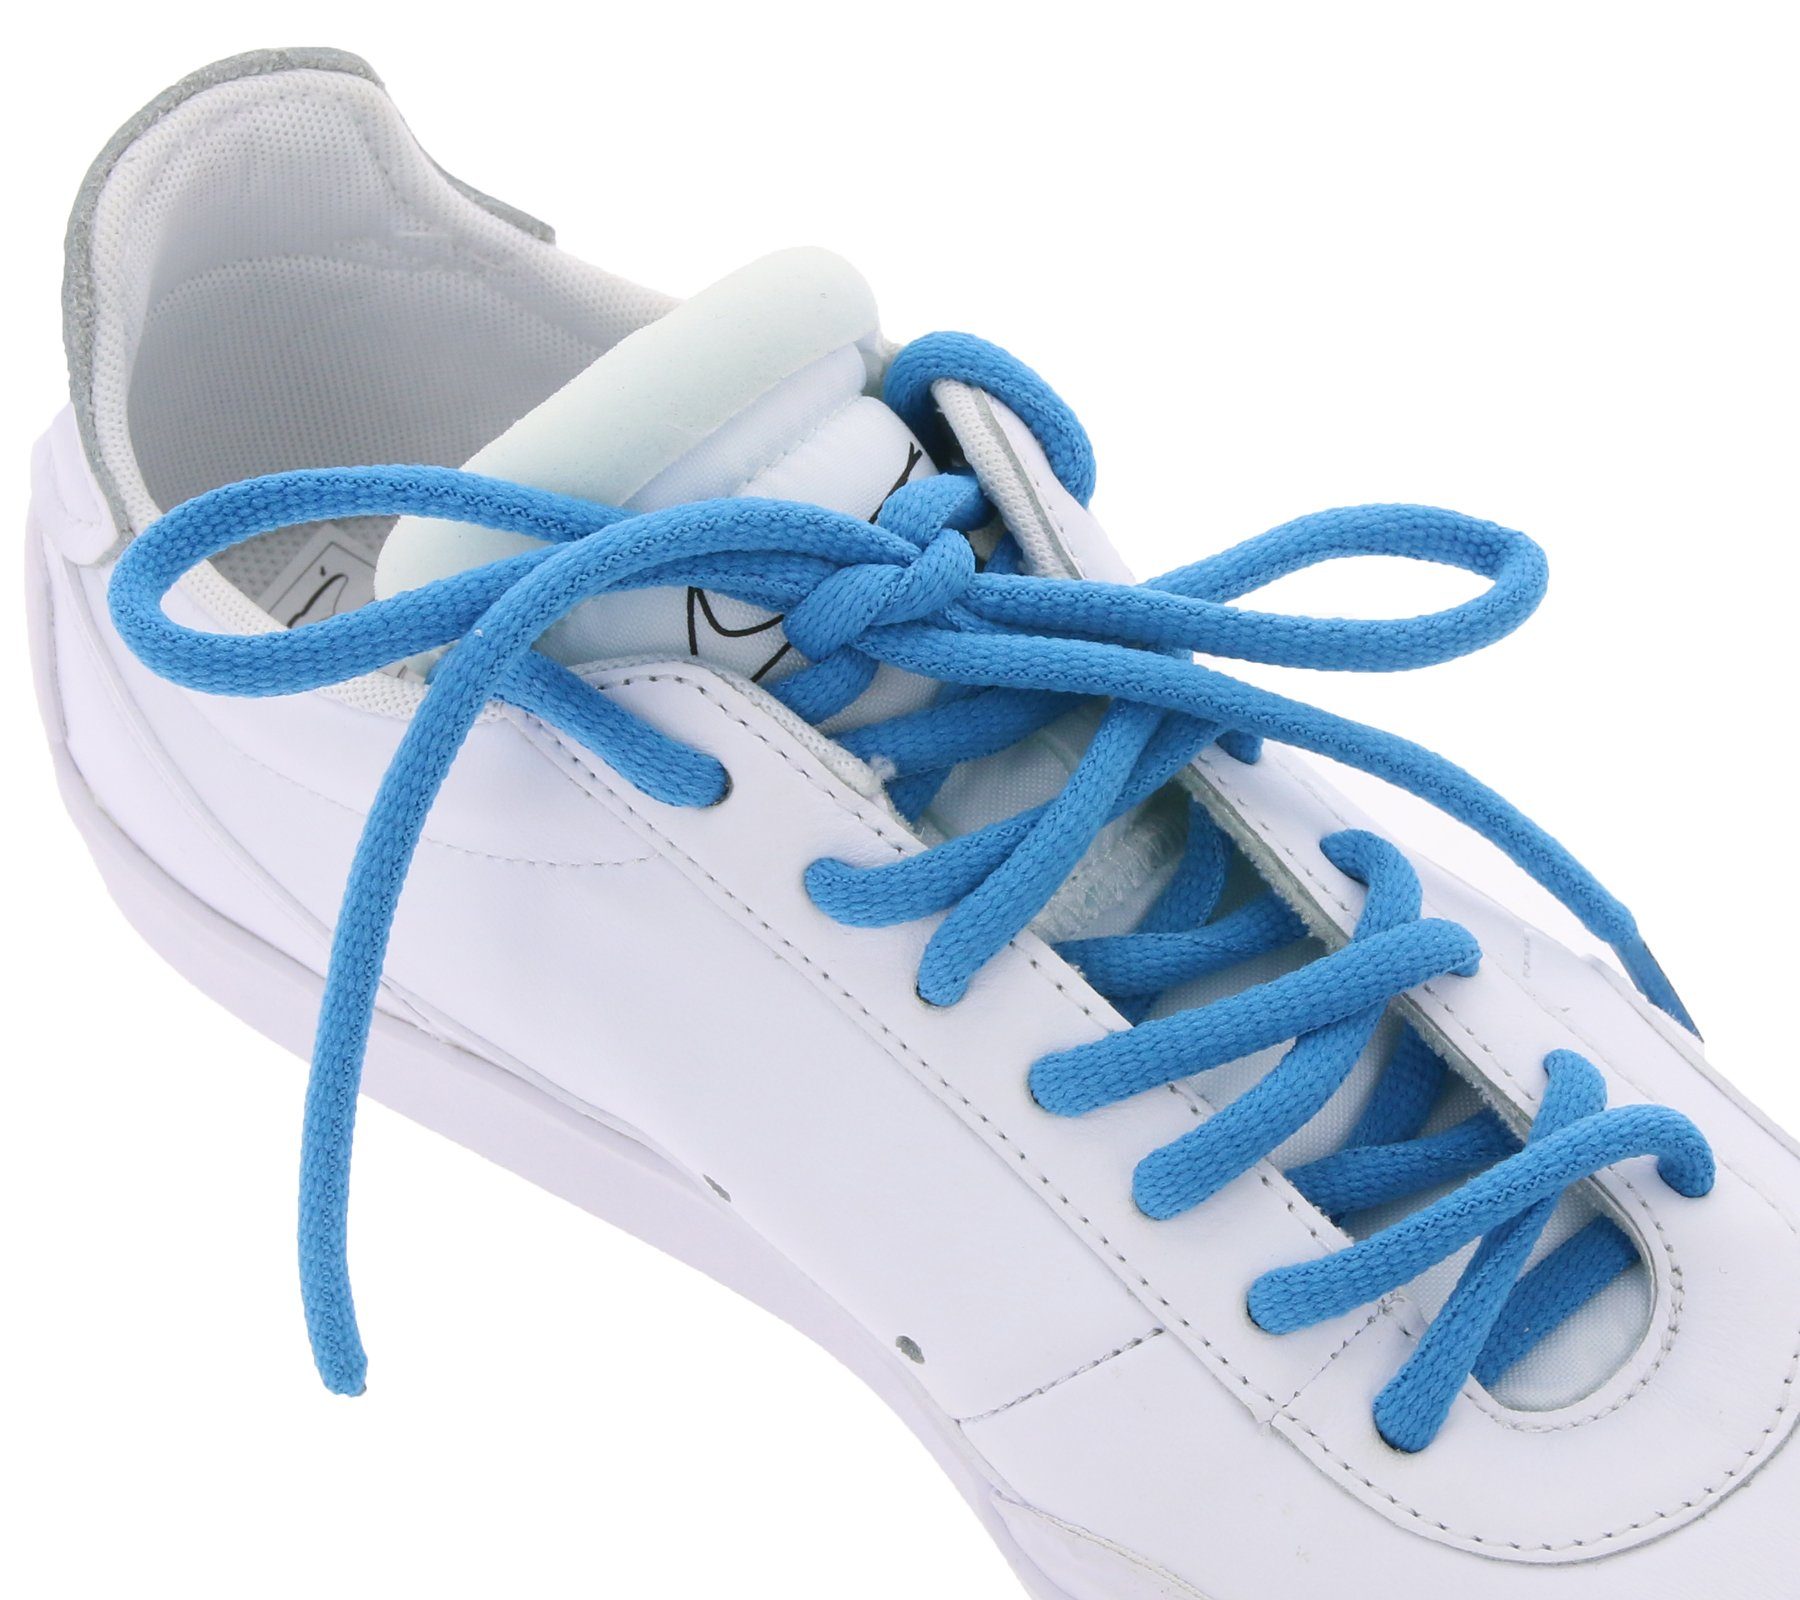 Tubelaces Schnürsenkel »TubeLaces Schuhe Schnürsenkel top angesagte  Schuhband Schnürbänder Blau« online kaufen | OTTO